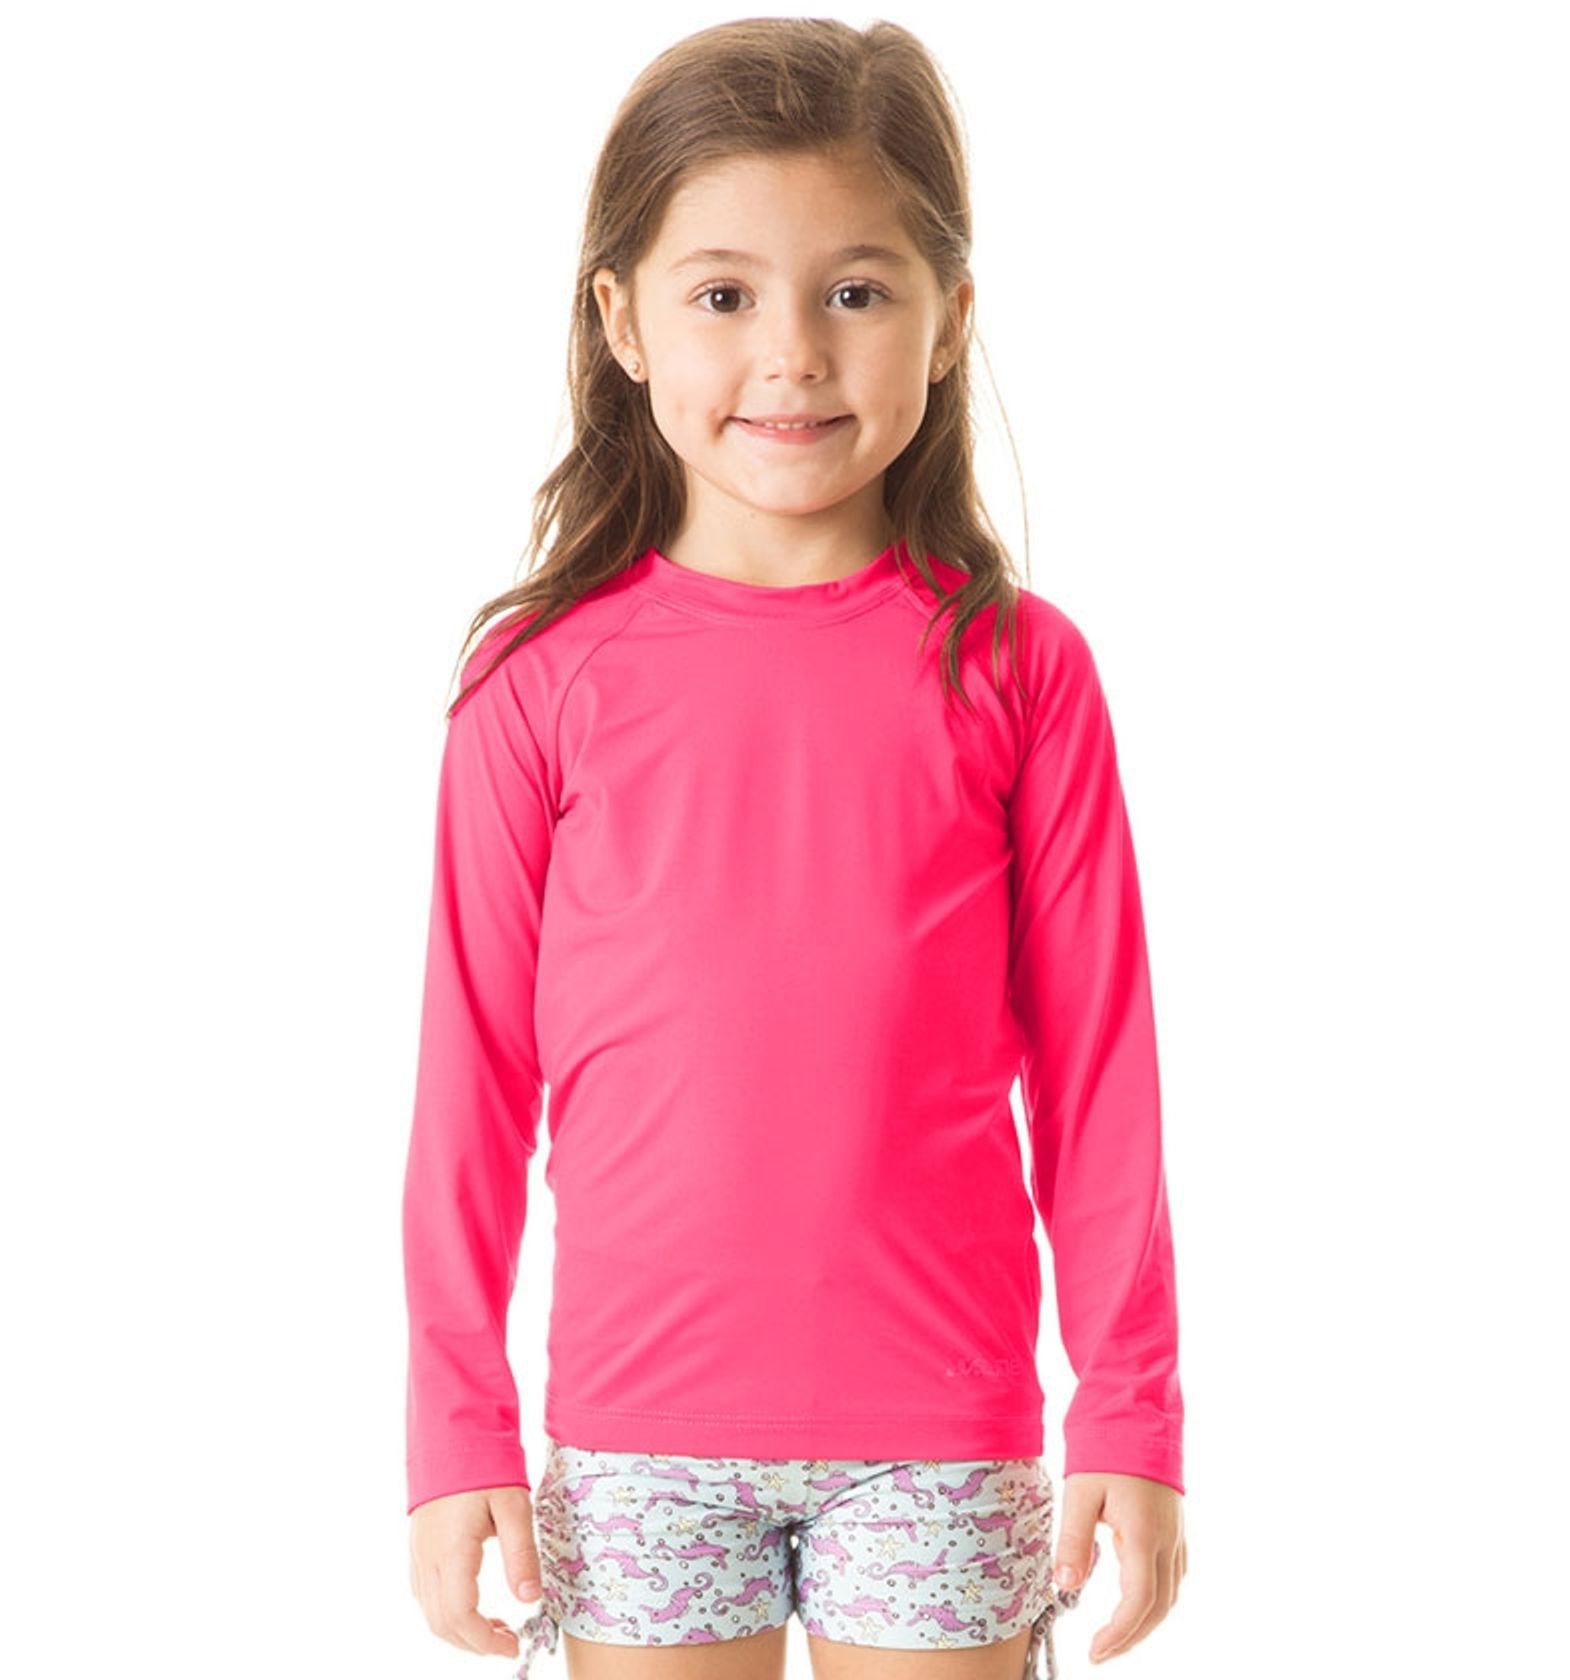 Camiseta UV LINE Uvpro Manga Longa Infantil Pink Proteção Solar